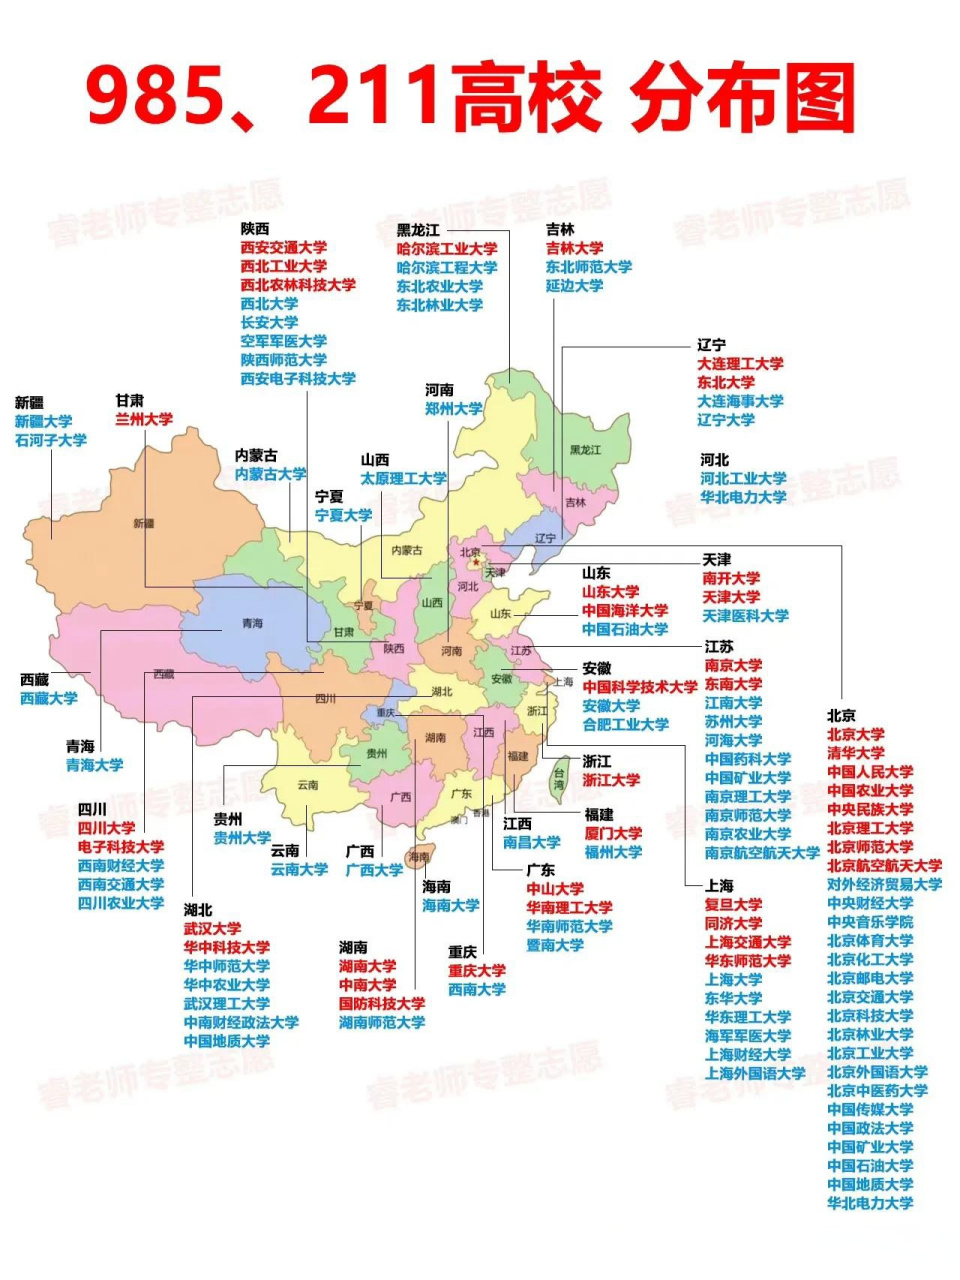 极具参考价值的985和211高校分布图,福建有而且只有两所,北京江苏上海